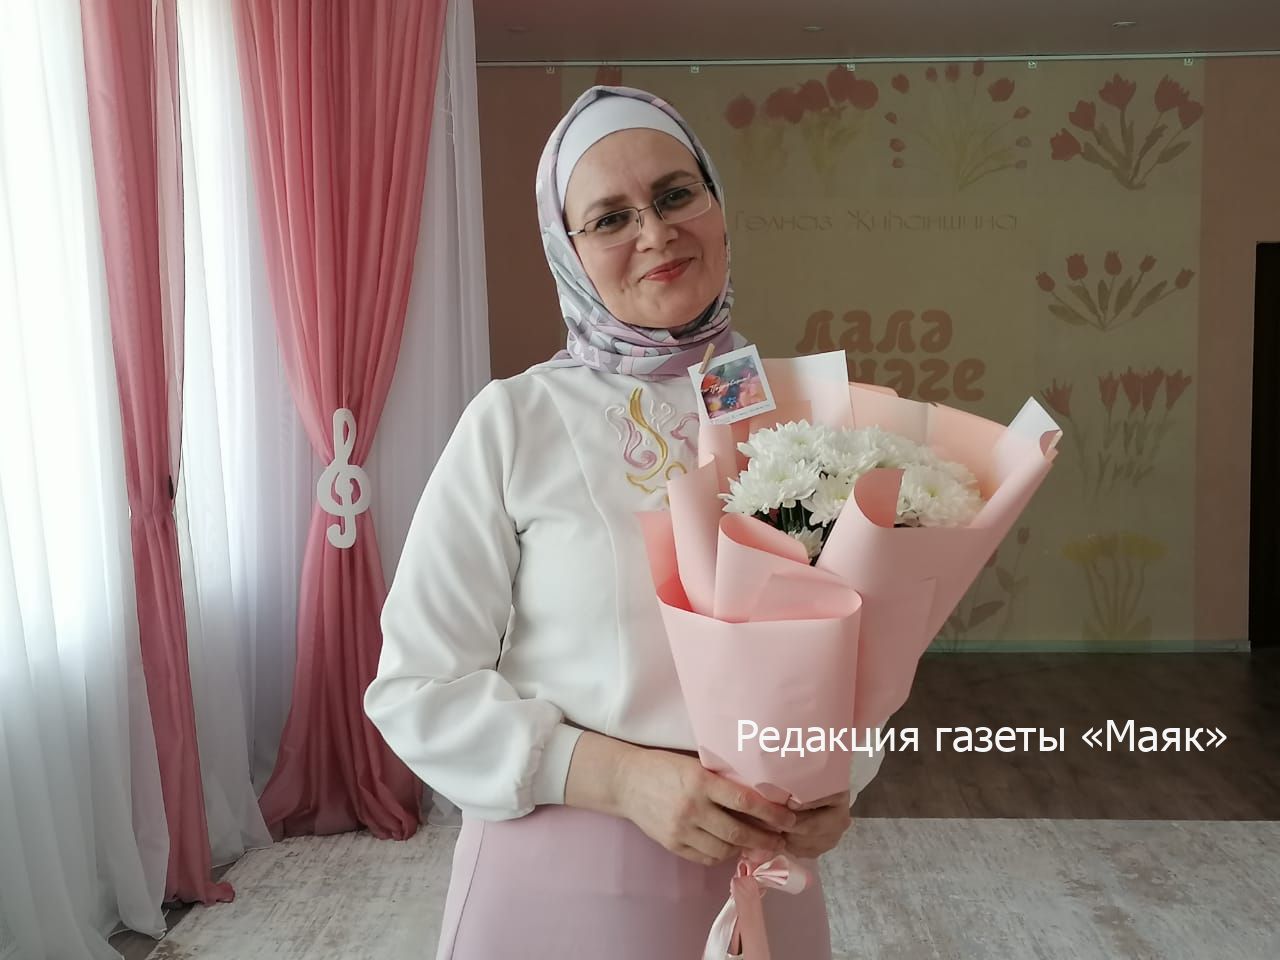 Вышел альбом татарских песен для детских садов города Азнакаево